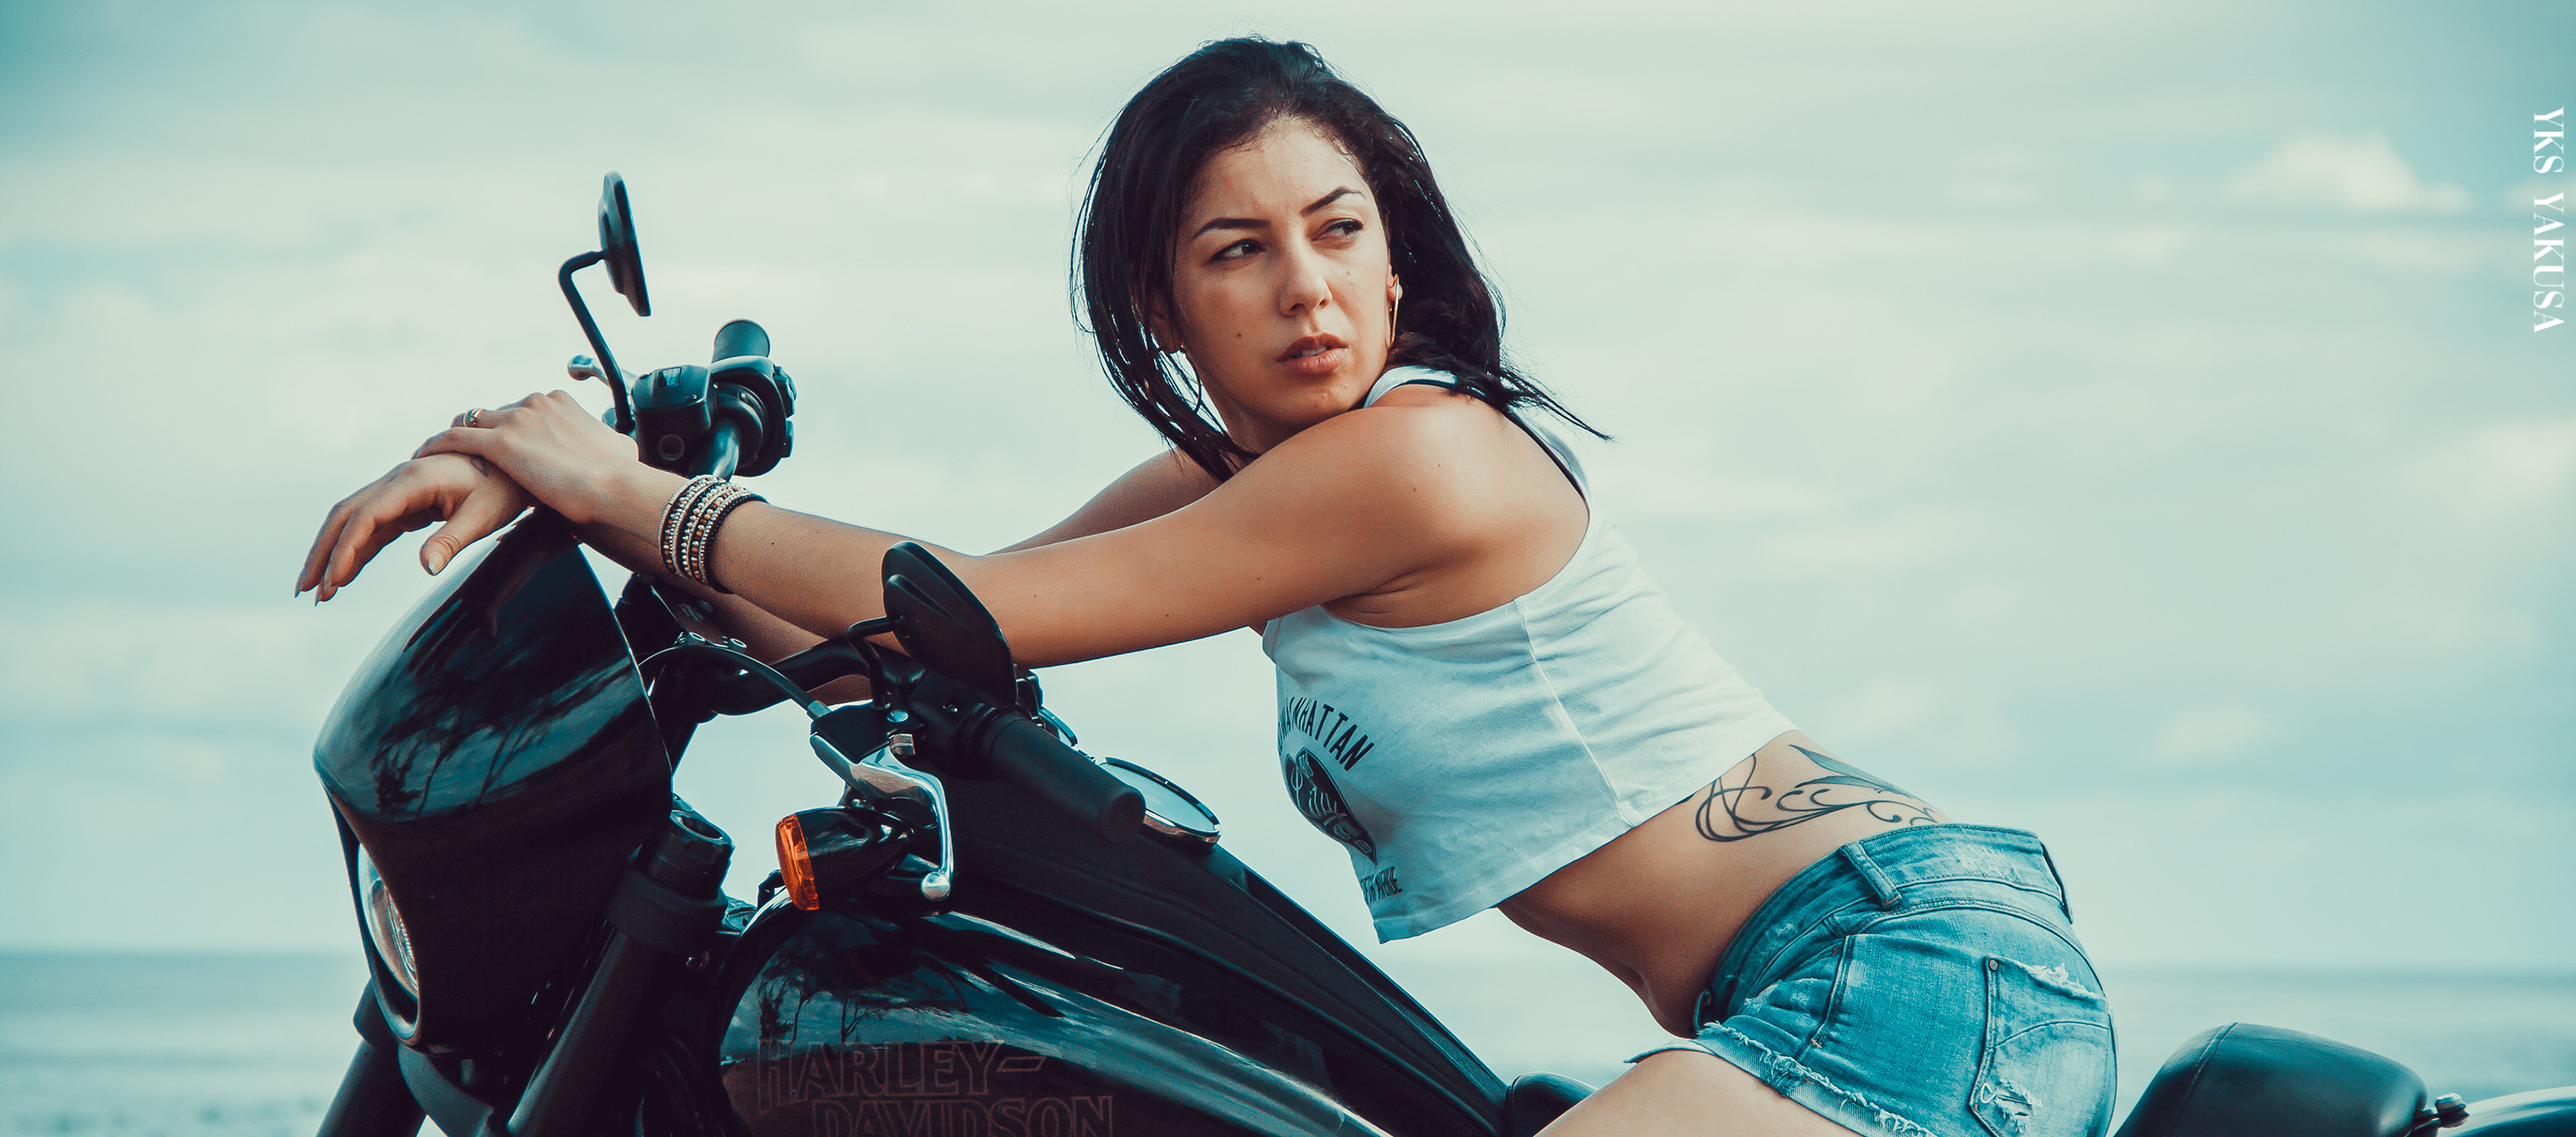 Nadine : elle savoure la vie sur sa moto après avoir connu la maladie